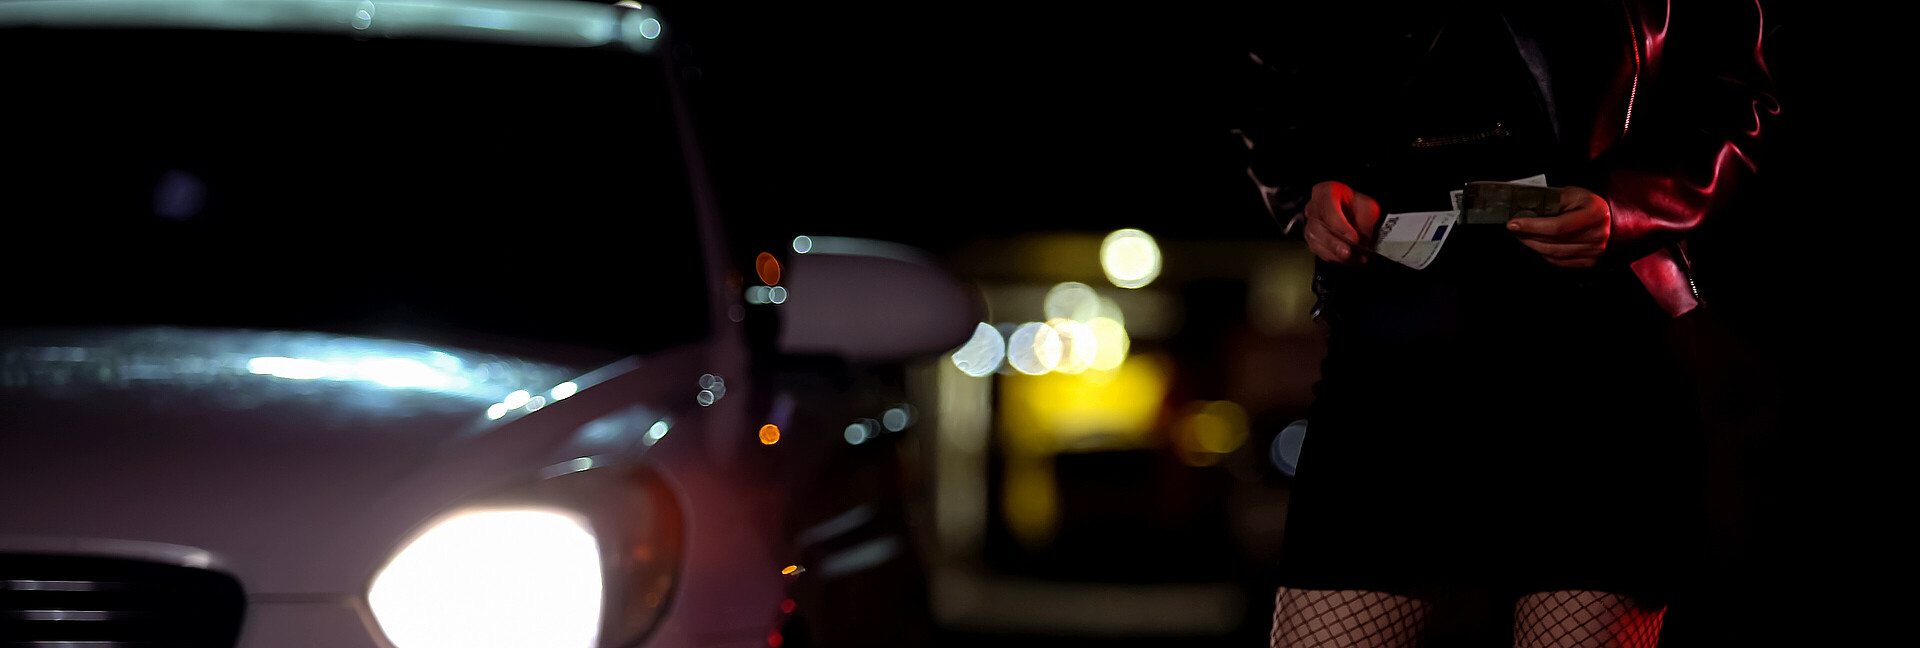 Prostituierte in Strüpfen mit Geldscheinen in der Hand neben einem Auto